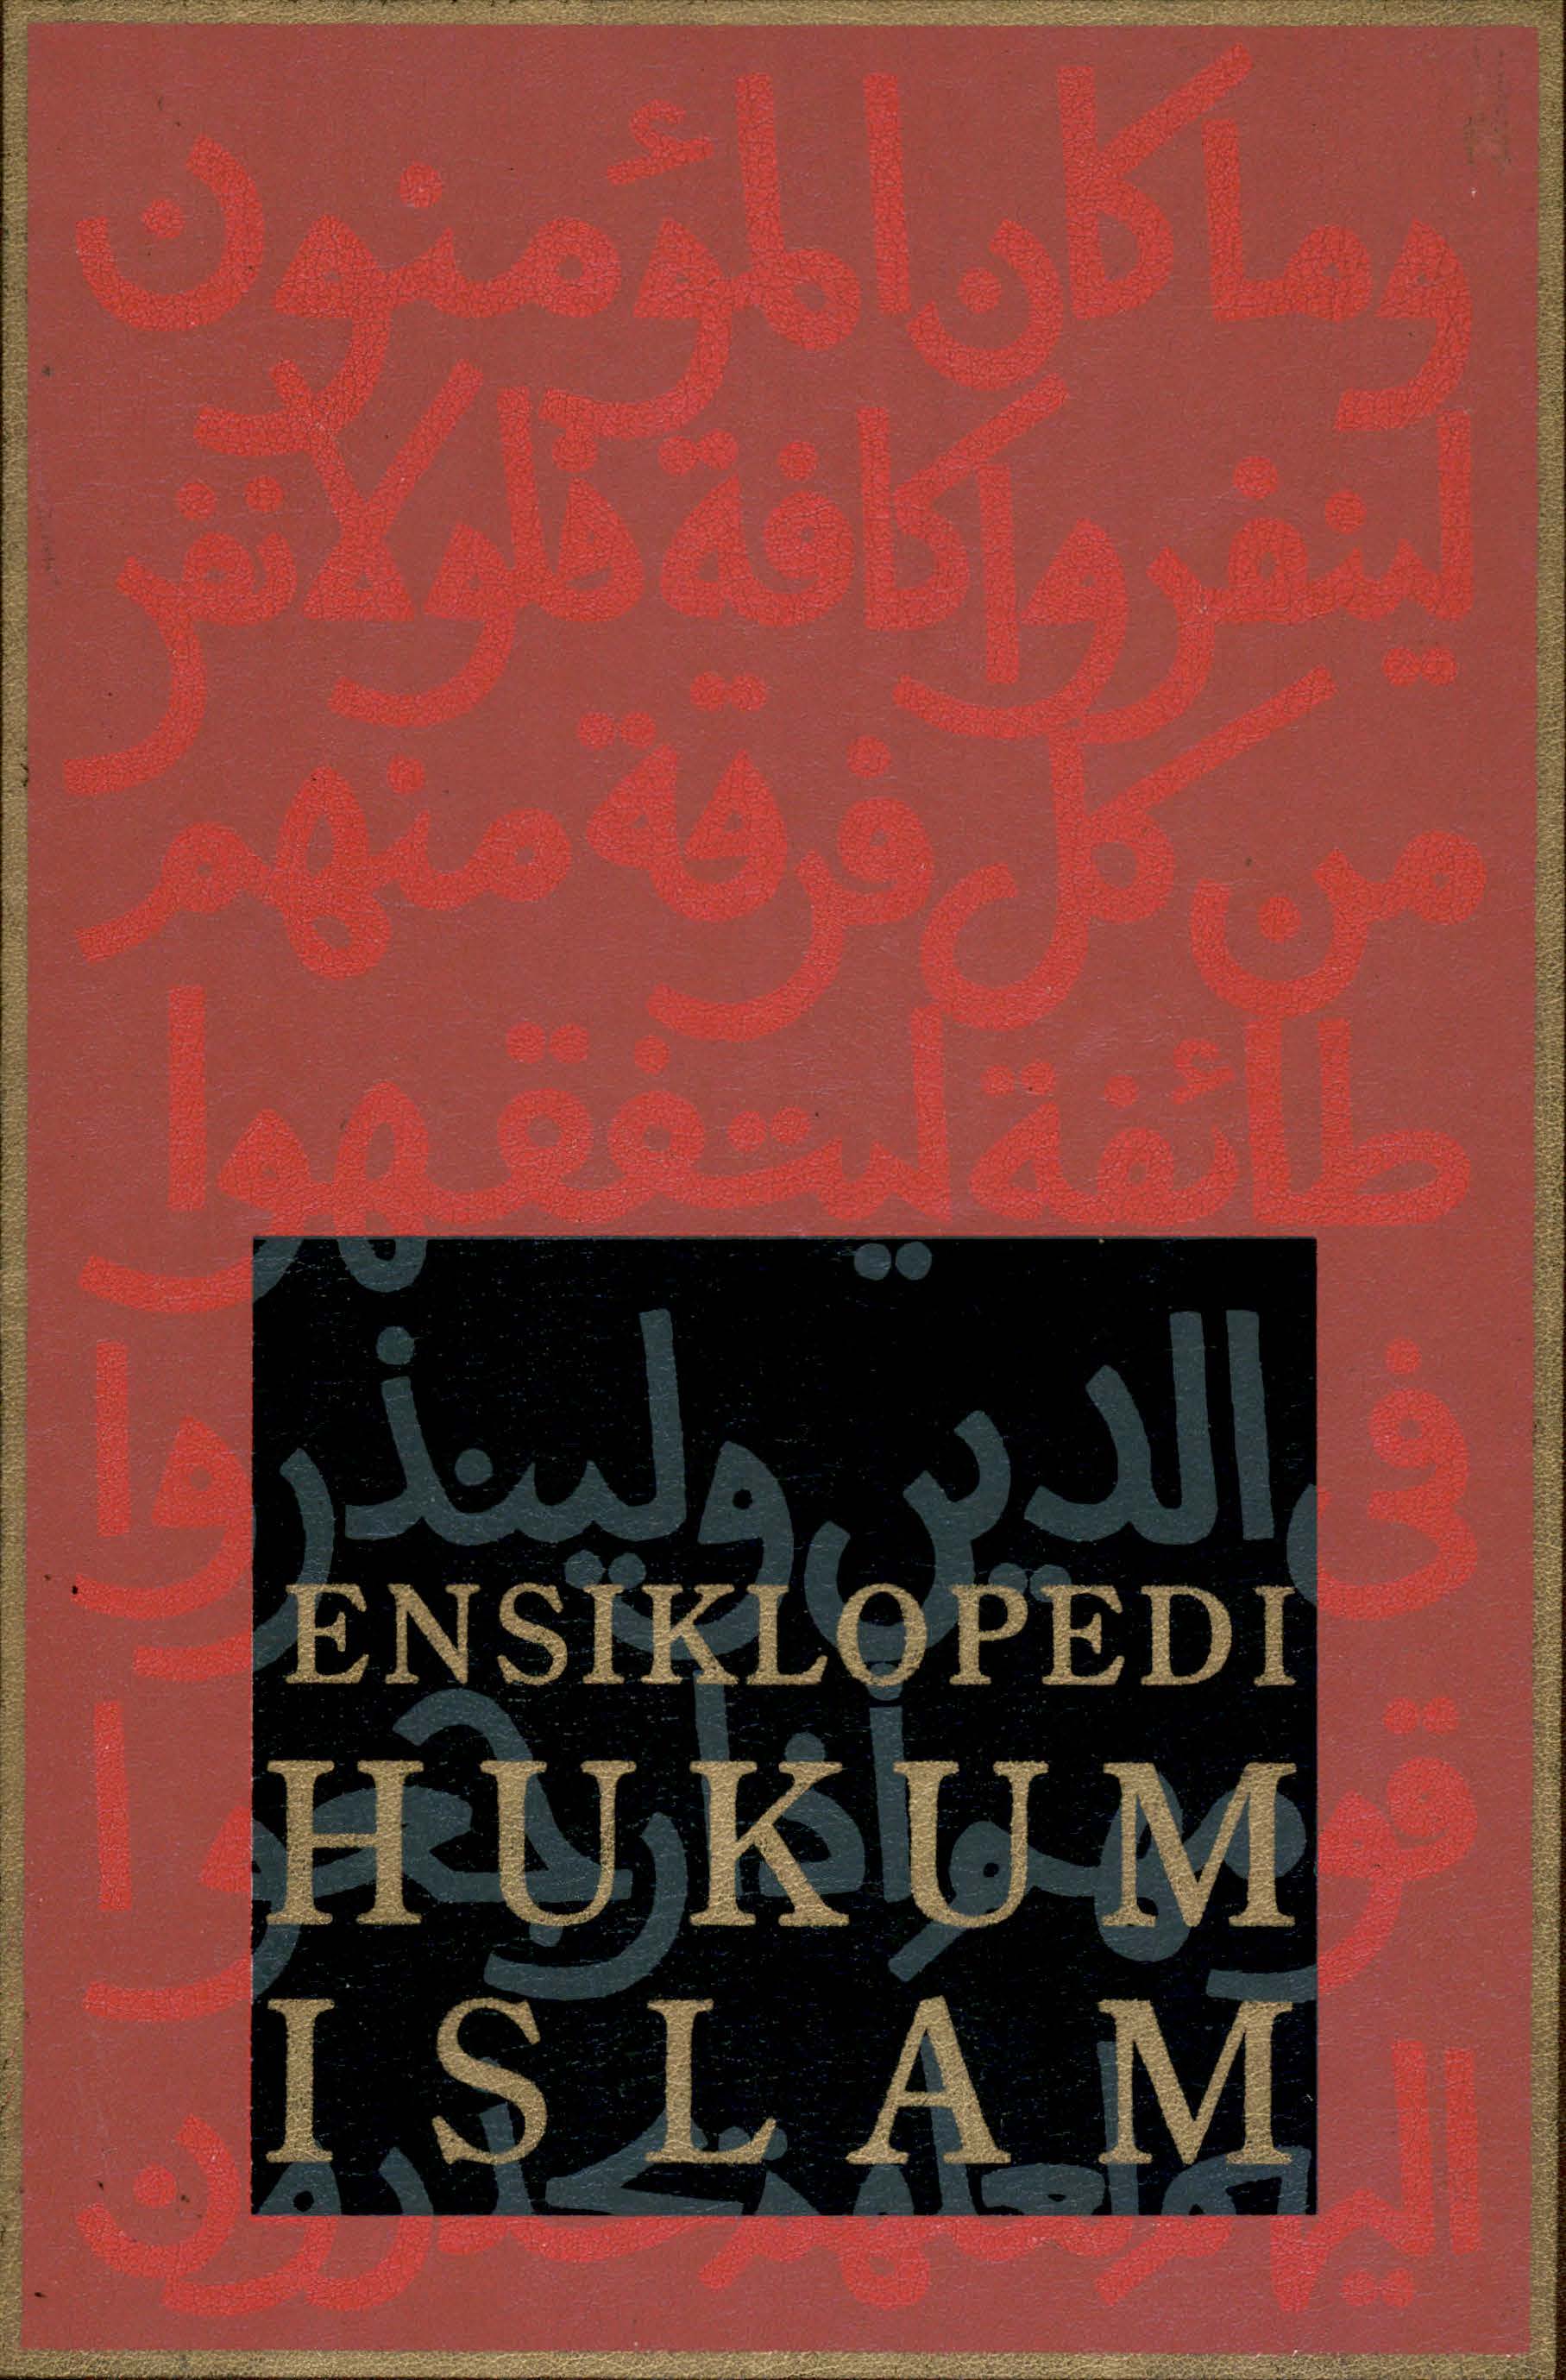 Ensiklopedi hukum islam : vol. 6 tat - zin